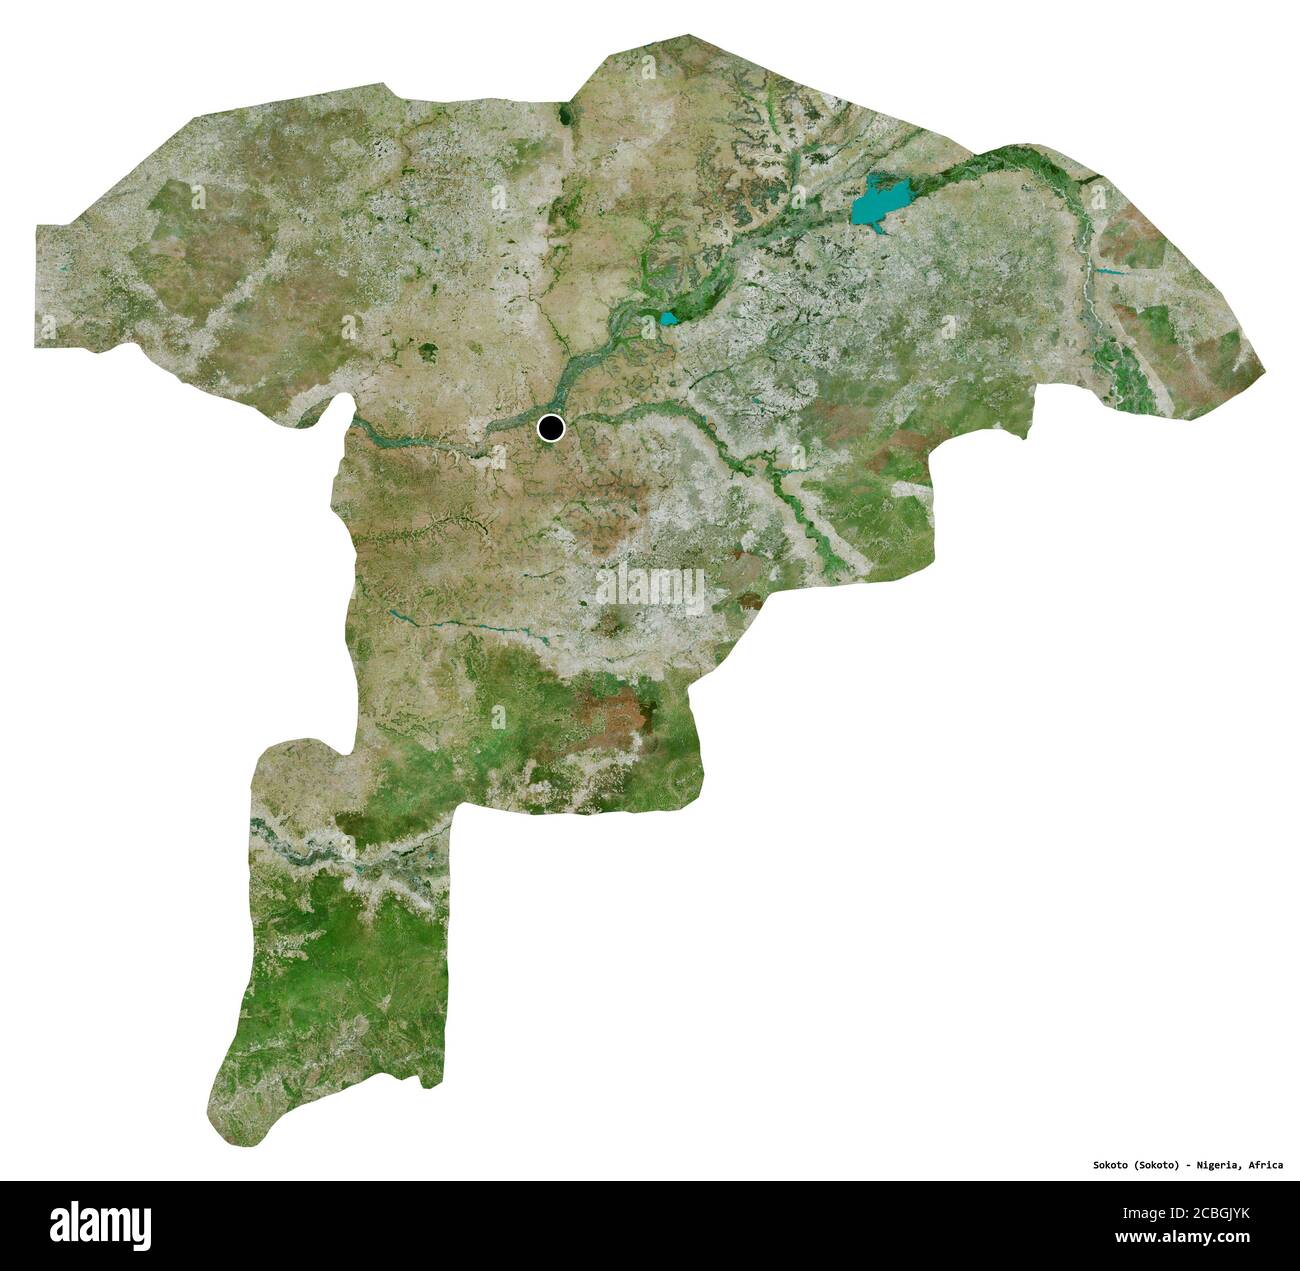 Forme de Sokoto, État du Nigeria, avec sa capitale isolée sur fond blanc. Imagerie satellite. Rendu 3D Banque D'Images